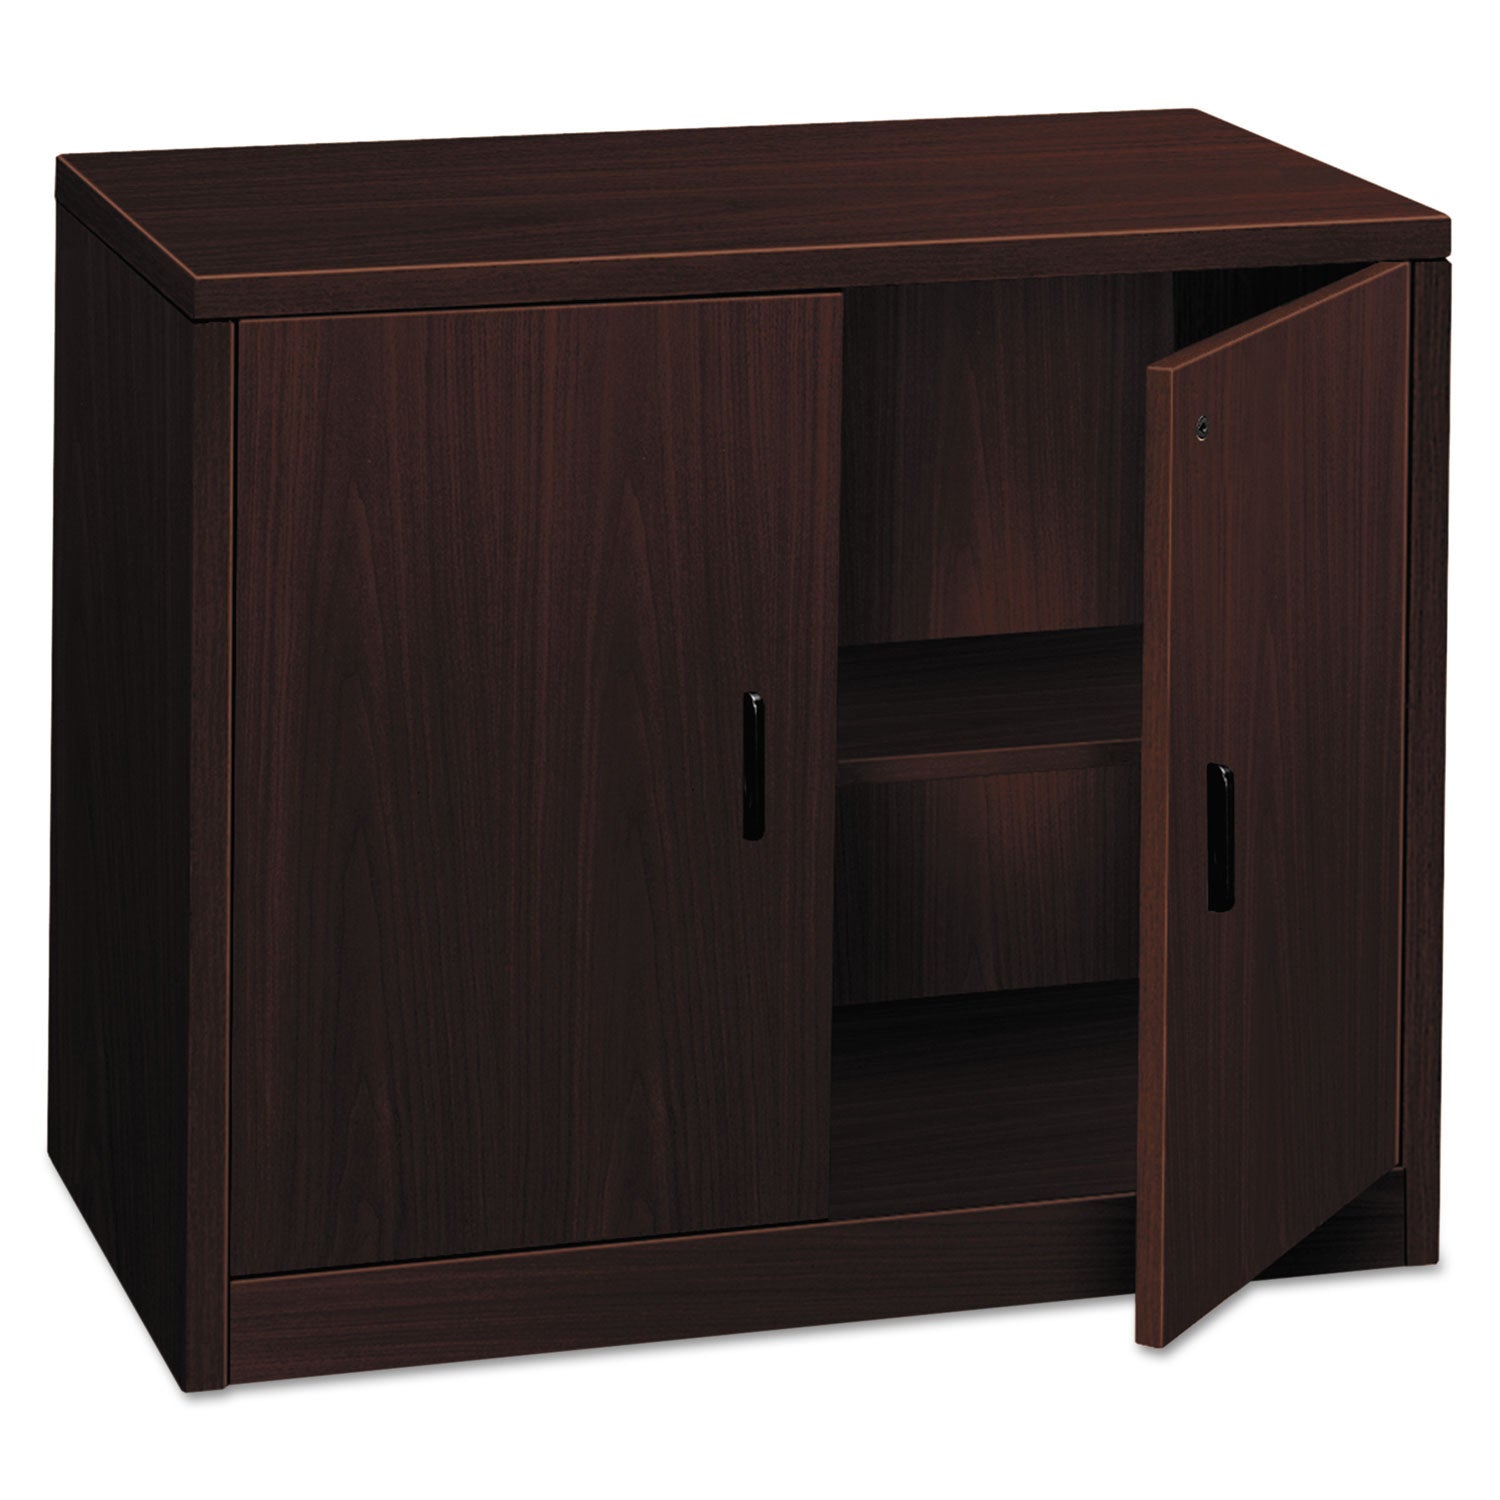 10500 Series Storage Cabinet w/Doors, 36w x 20d x 29.5h, Mahogany - 